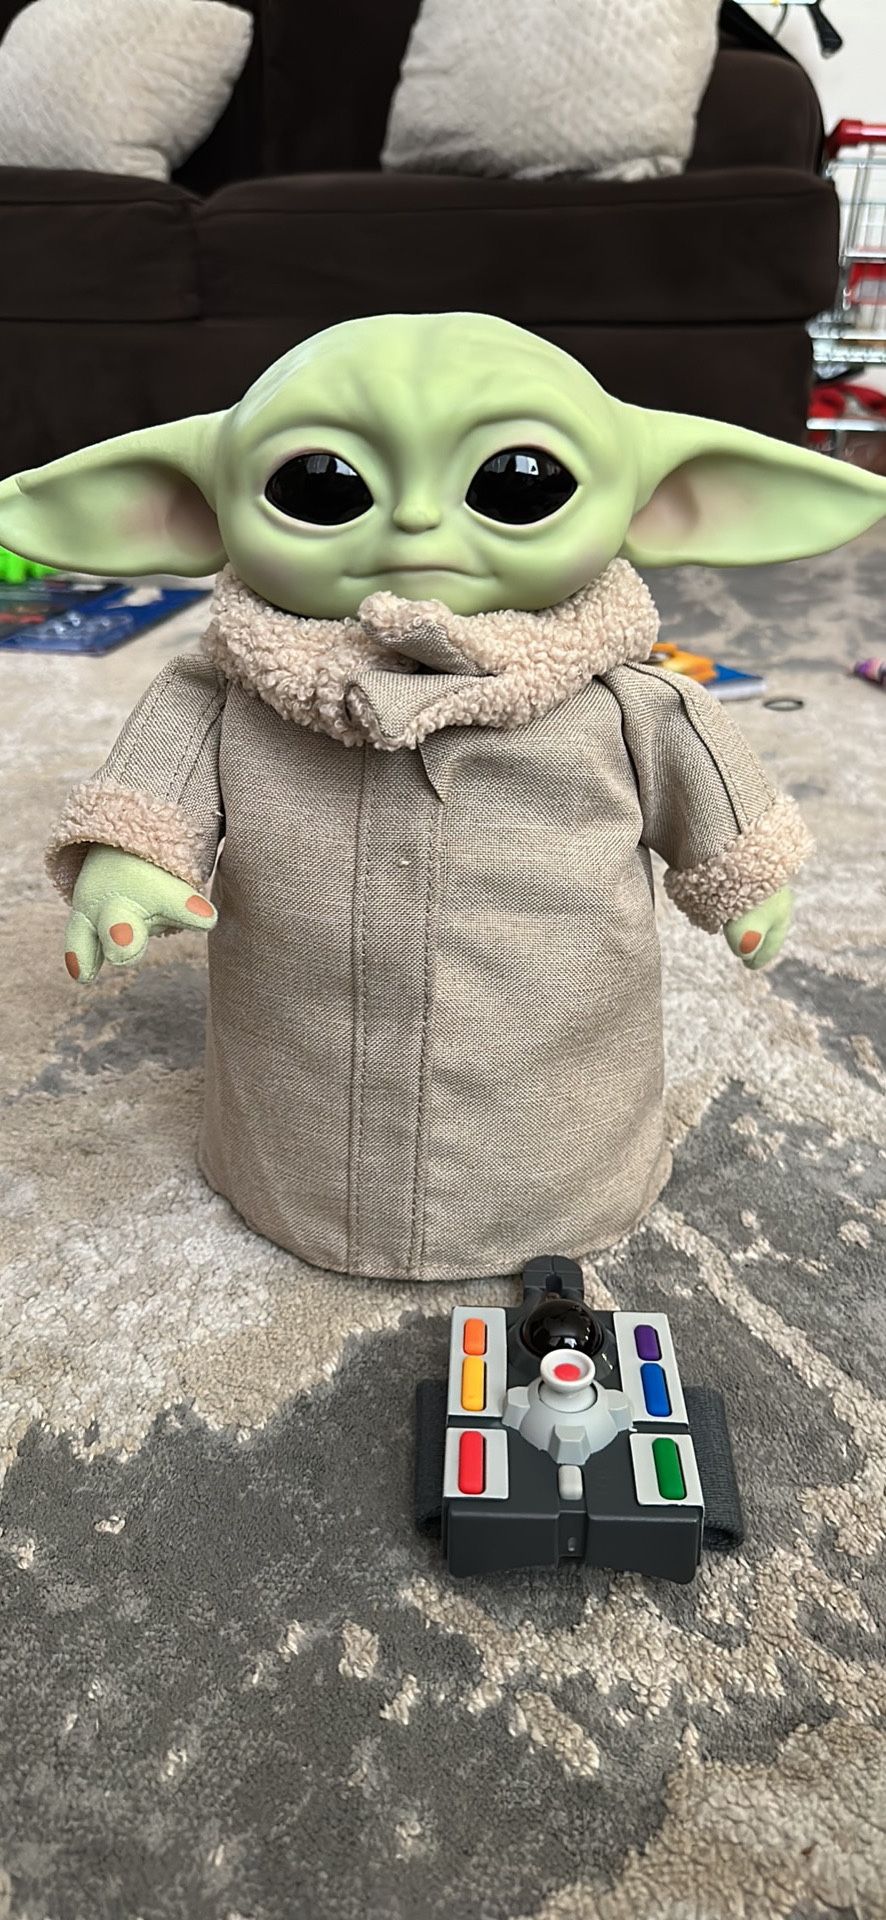 Star Wars Baby Yoda Remote Control Doll